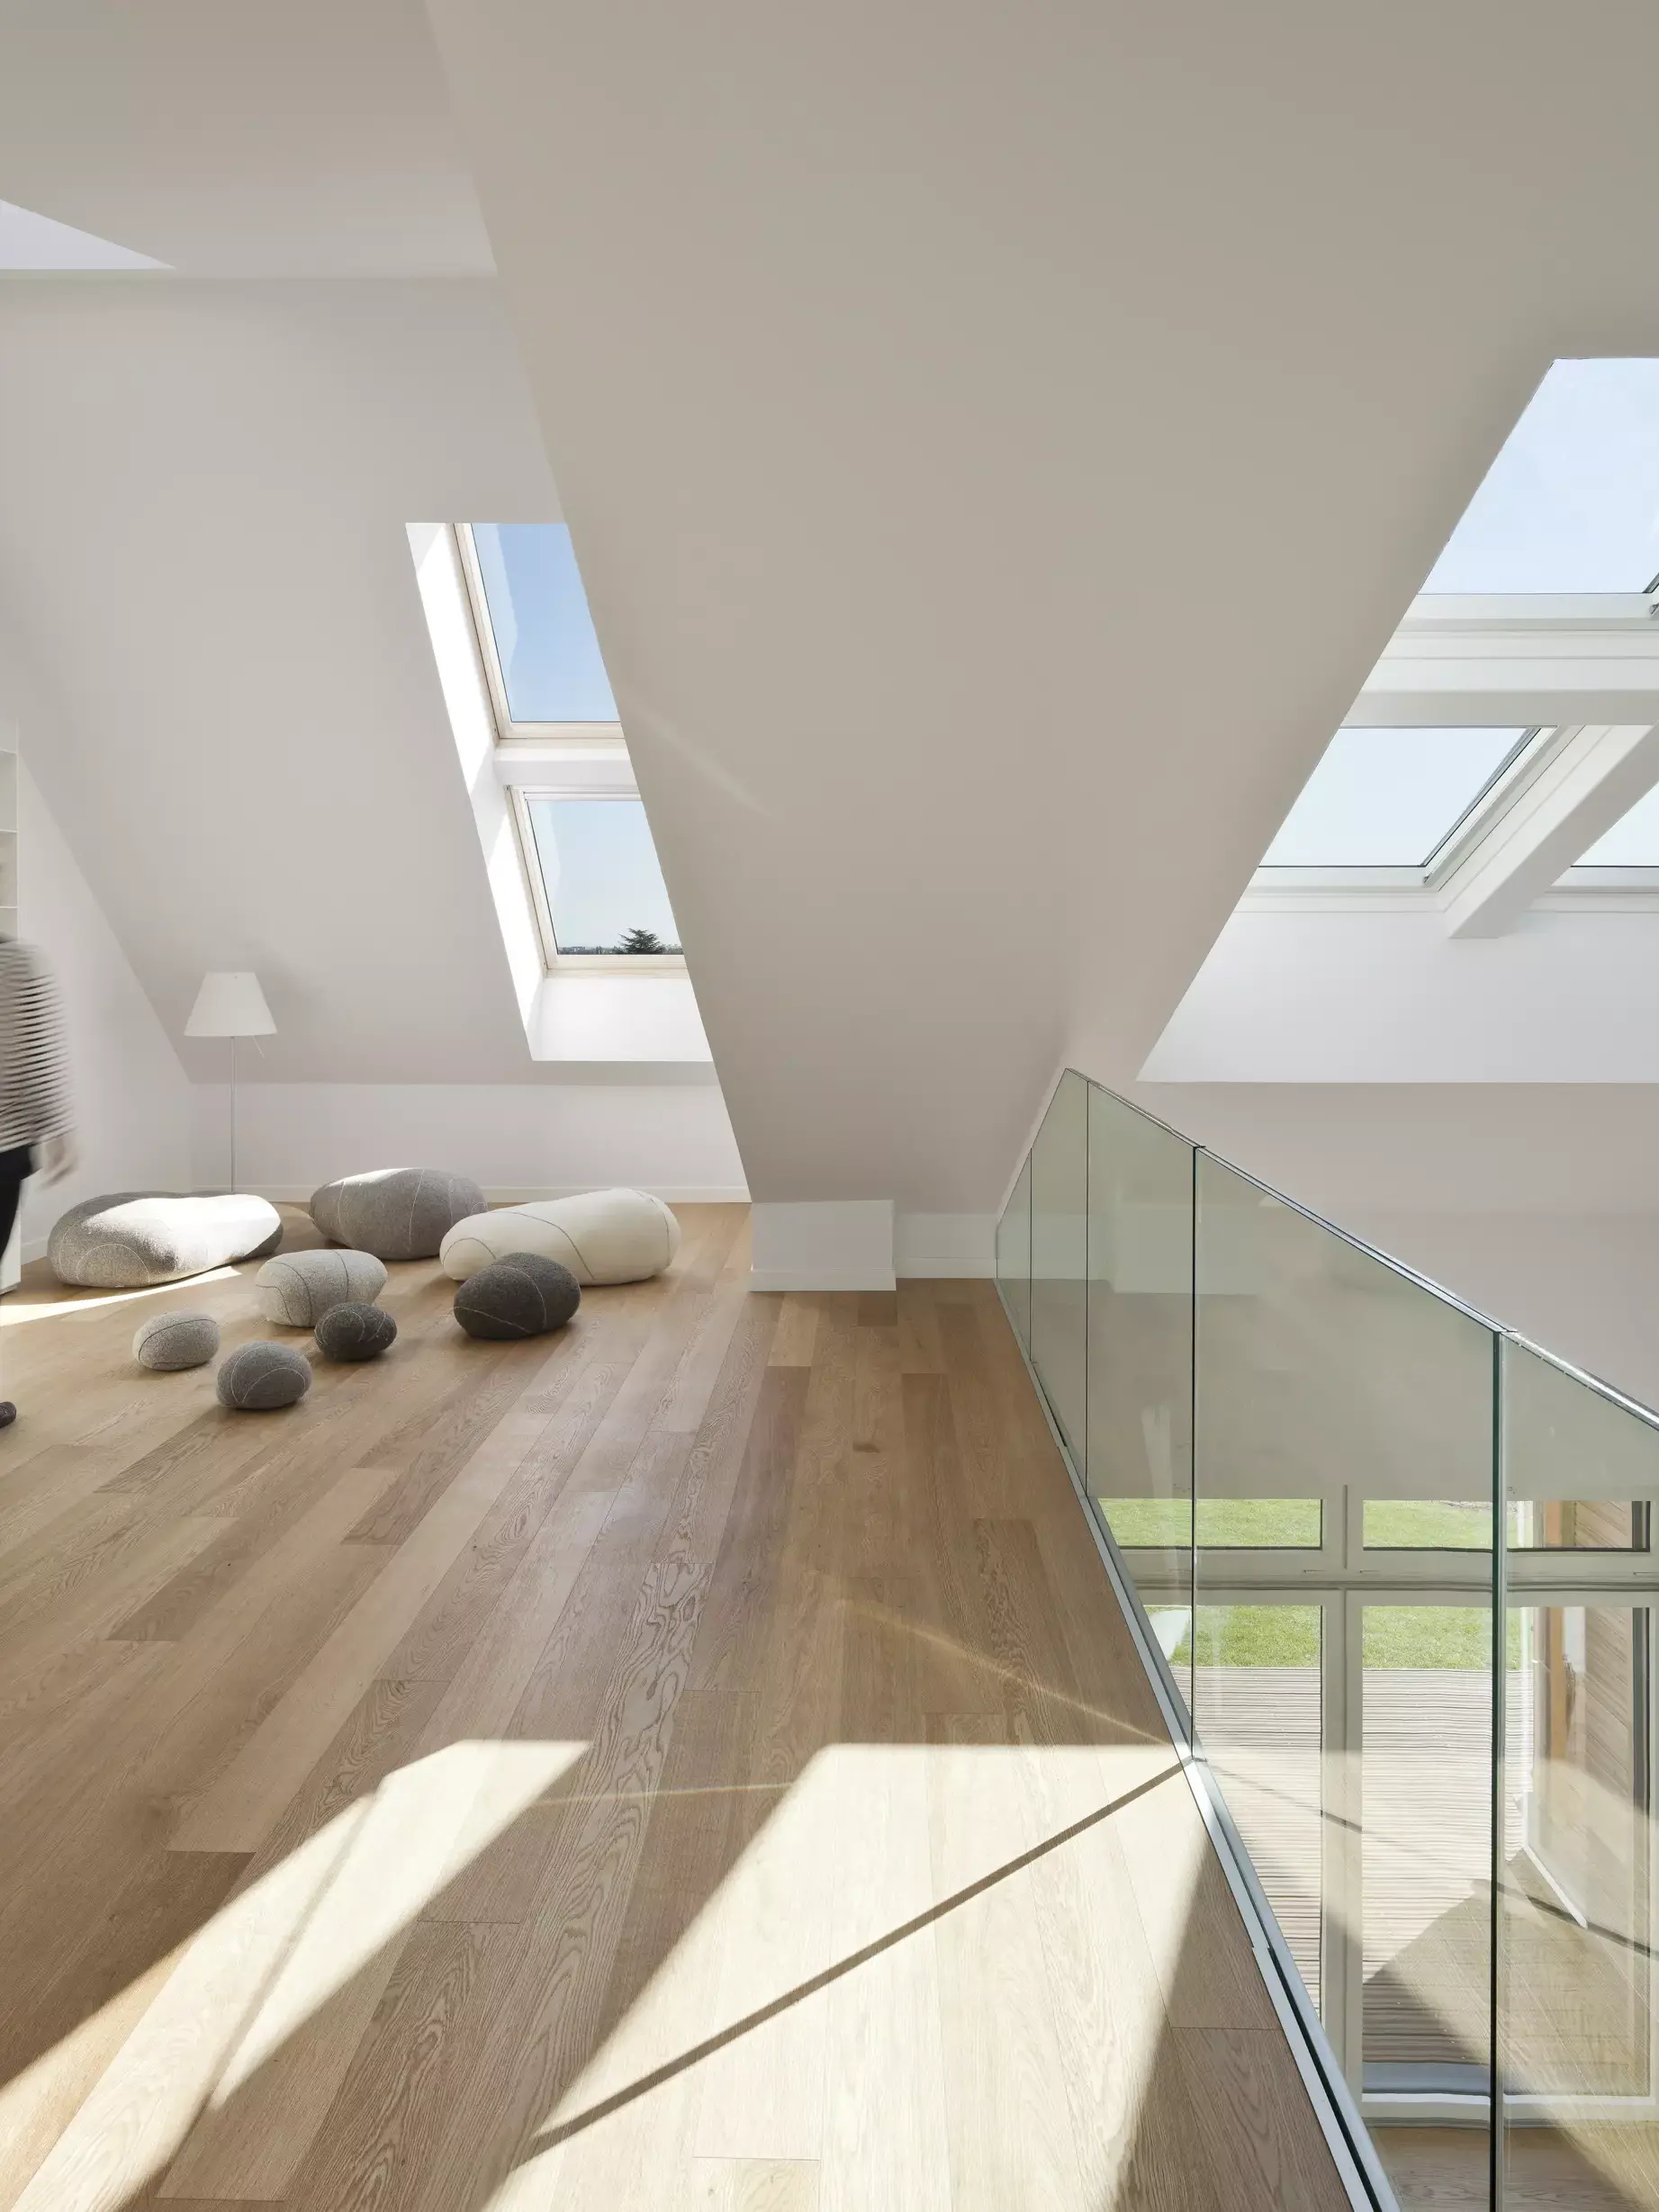 Mansarda moderna con finestra VELUX, pavimento in legno e balaustra in vetro.